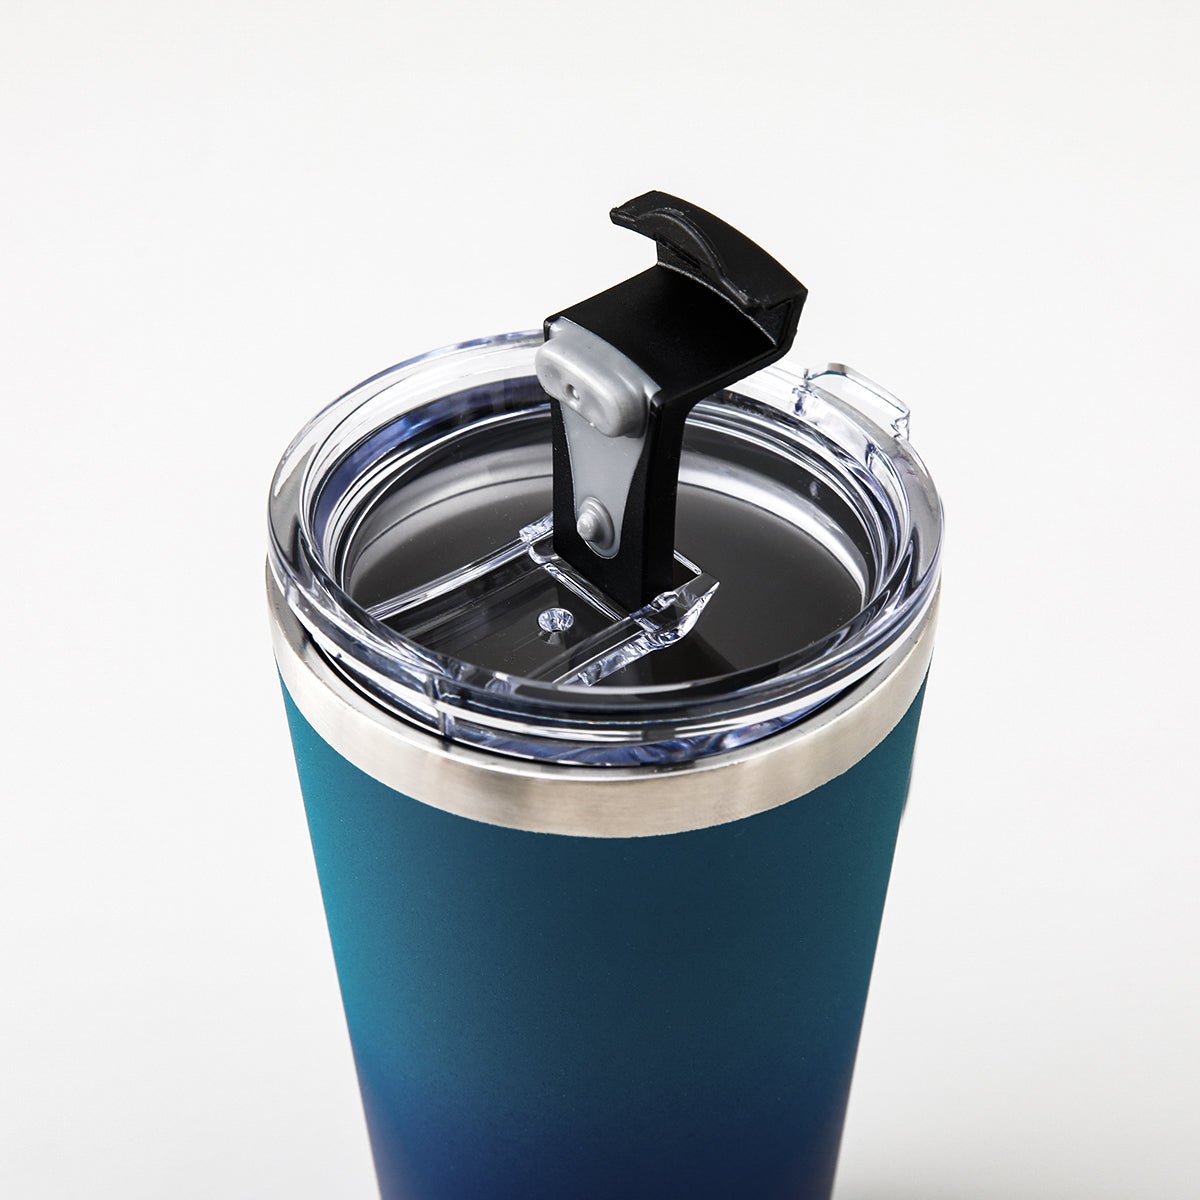 Insulated Double Wall Stainless Steel Coffee Mug - Aqua Blue 450ml - Rage Coffee